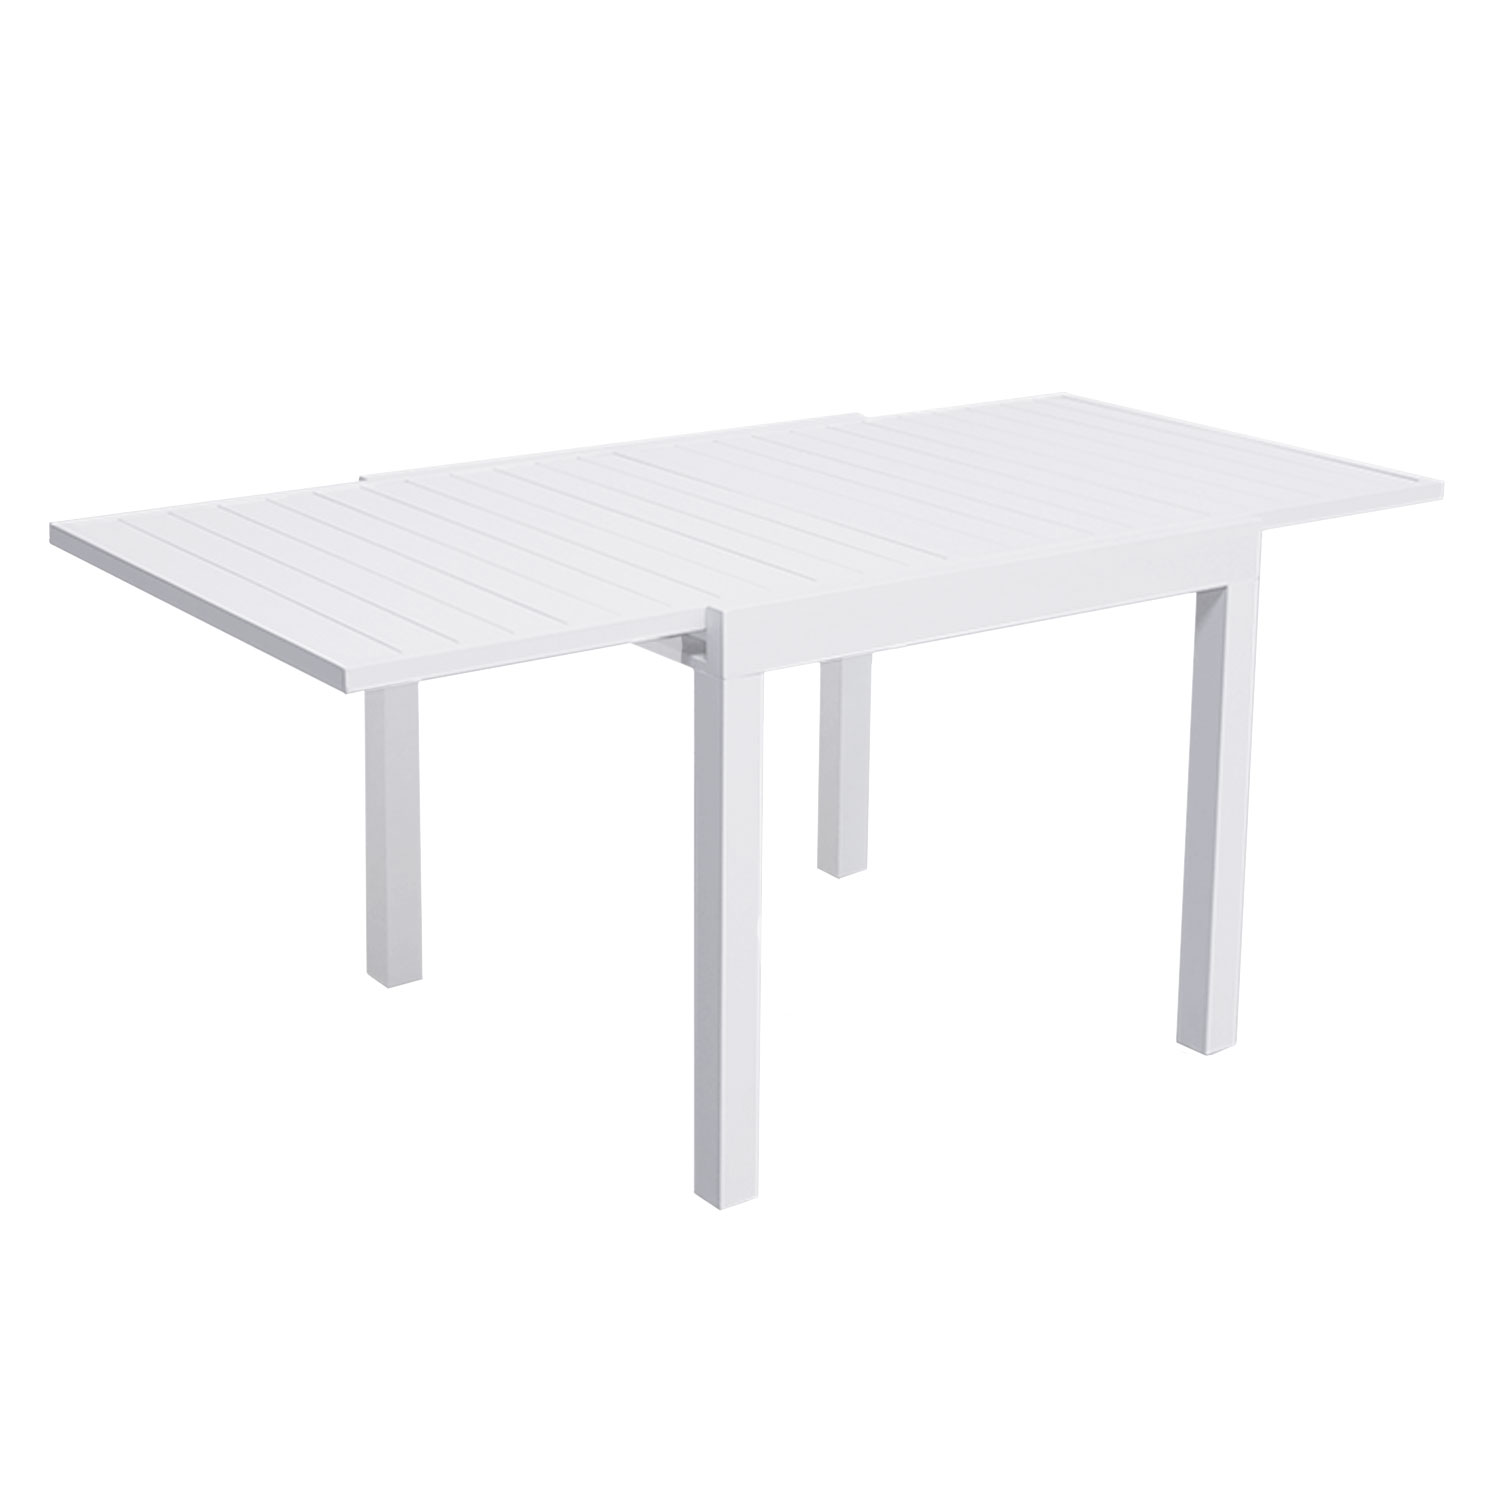 VENEZIA Set di mobili da giardino allungabili in textilene grigio 90/180 - alluminio bianco